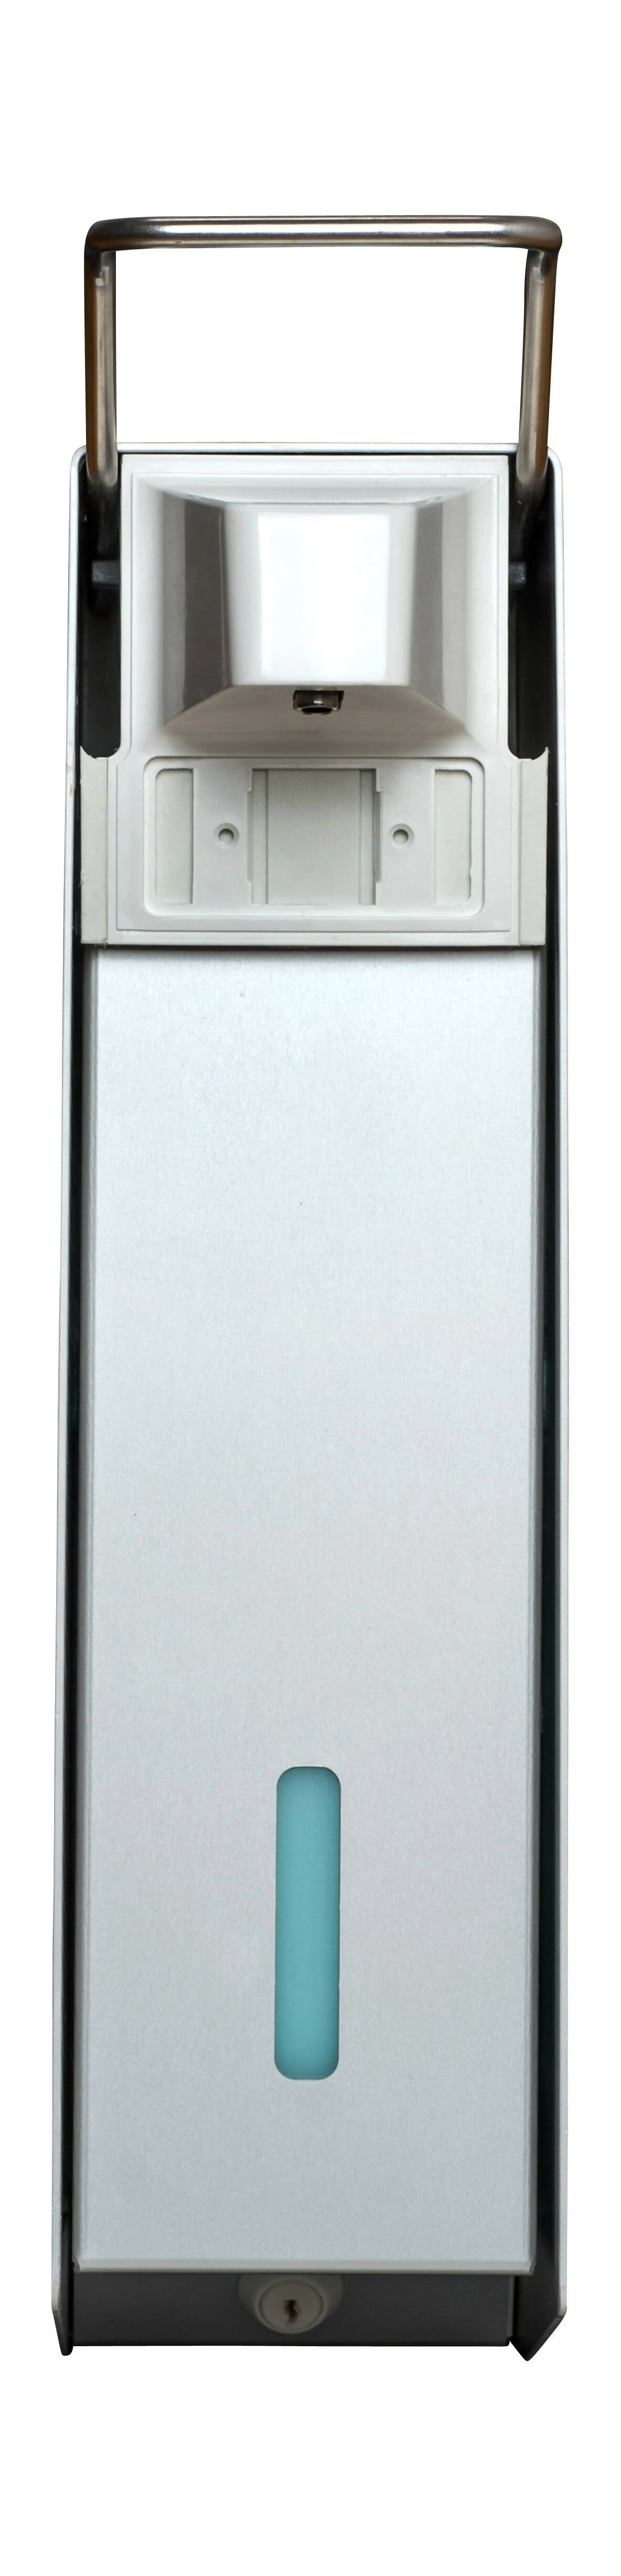 SORIFA - 2er-Set - Robuster, ergonomischer, abschließbarer Wandspender aus Metall für 2,5L-Flasche der Marke SORIFA - Für Gele und Flüssigseifen.